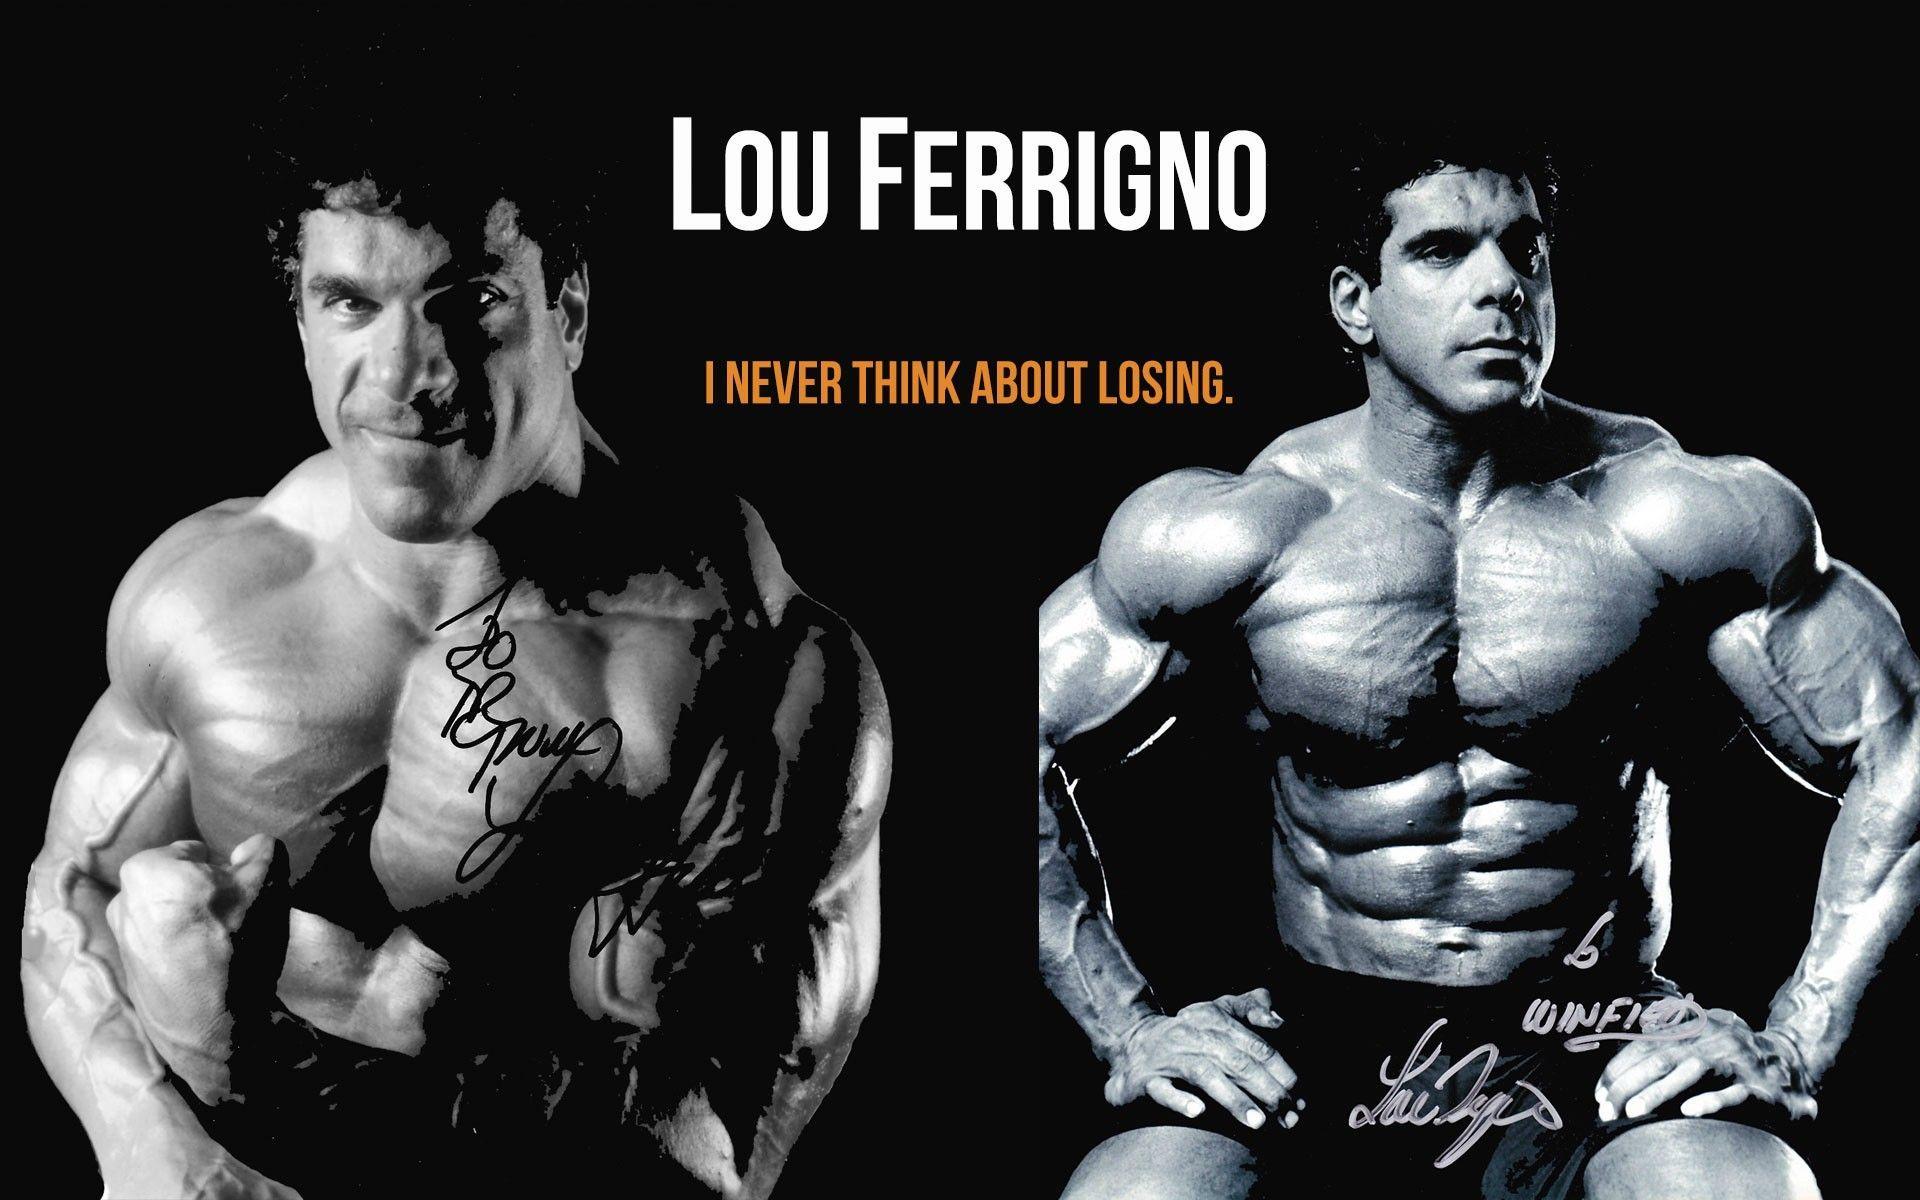 Lou Ferrigno bodybuilding picture wallpaper